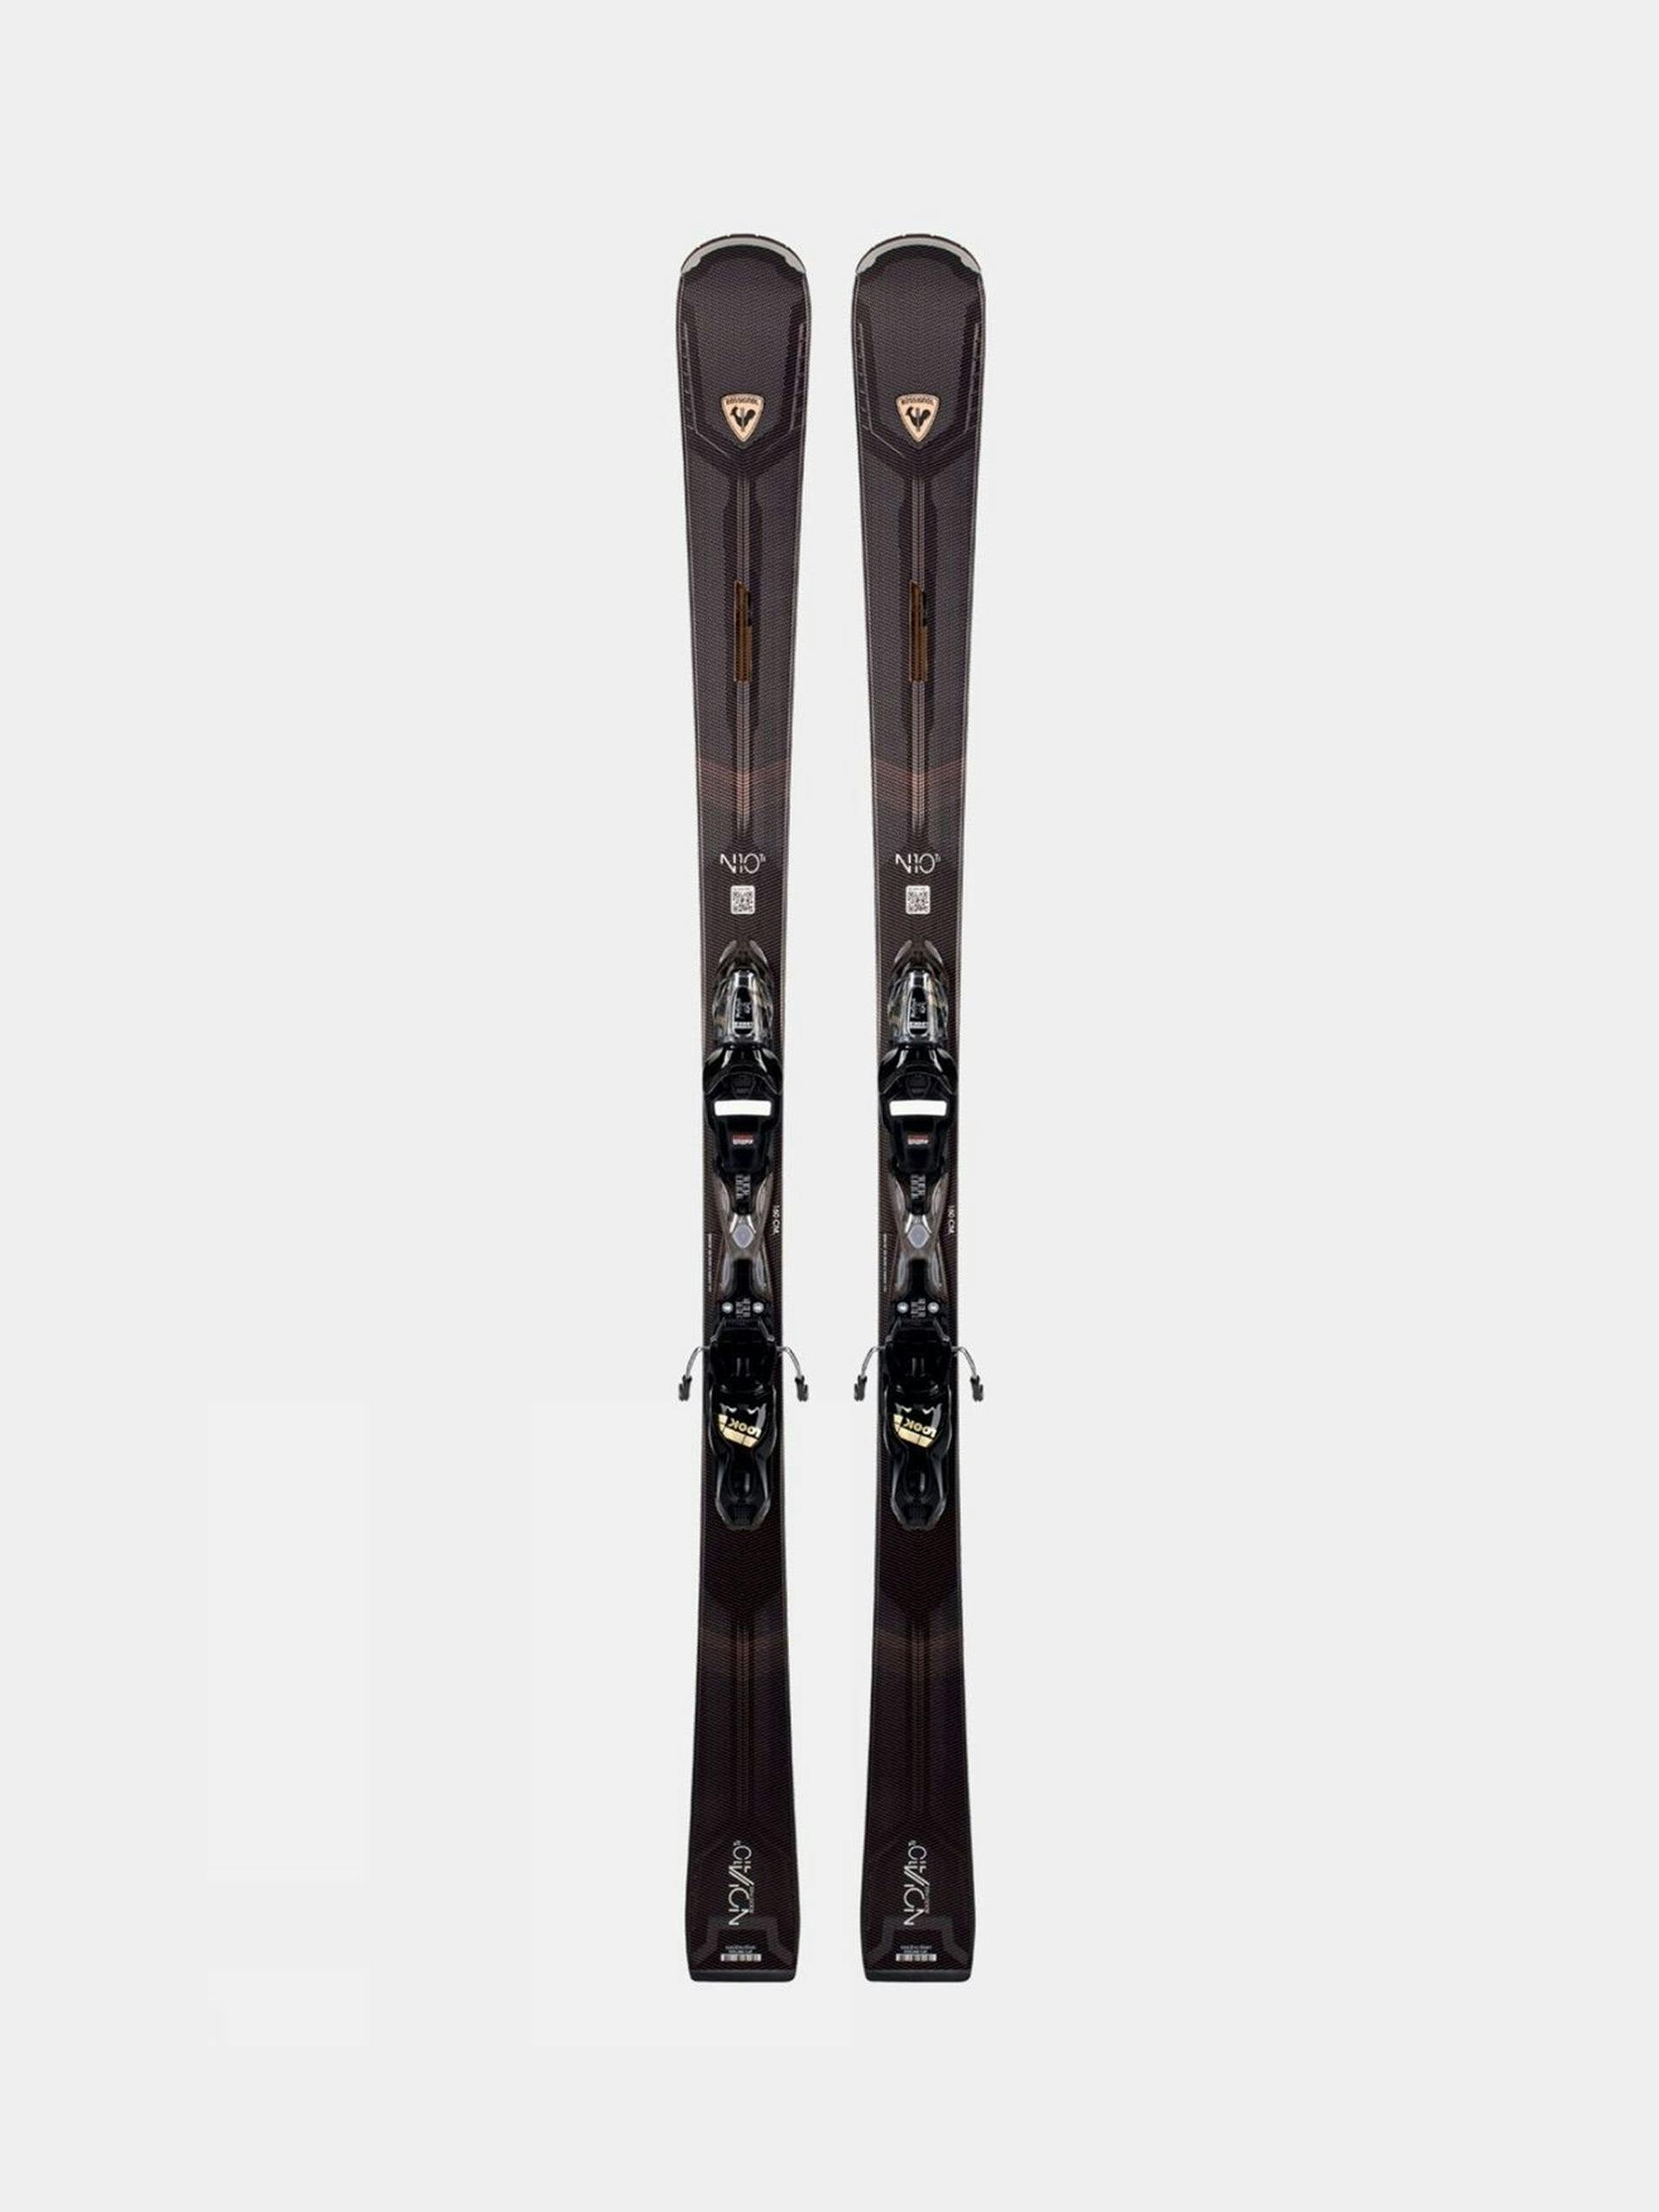 Race-inspired black skis